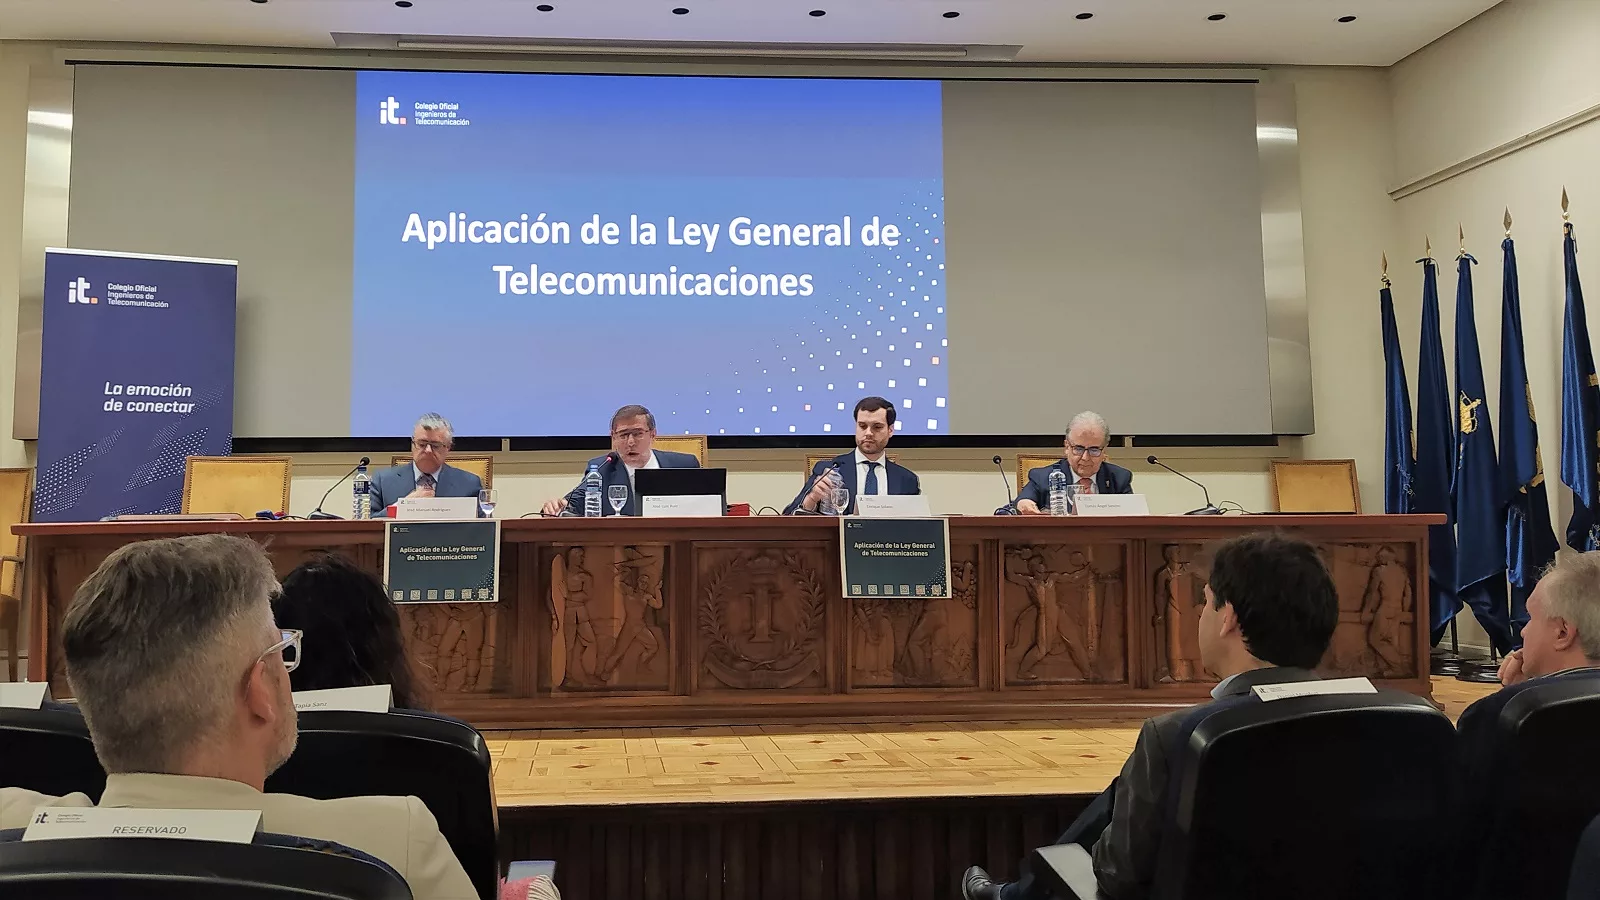 APLICACIÓN DE LA LEY GENERAL DE TELECOMUNICACIONES